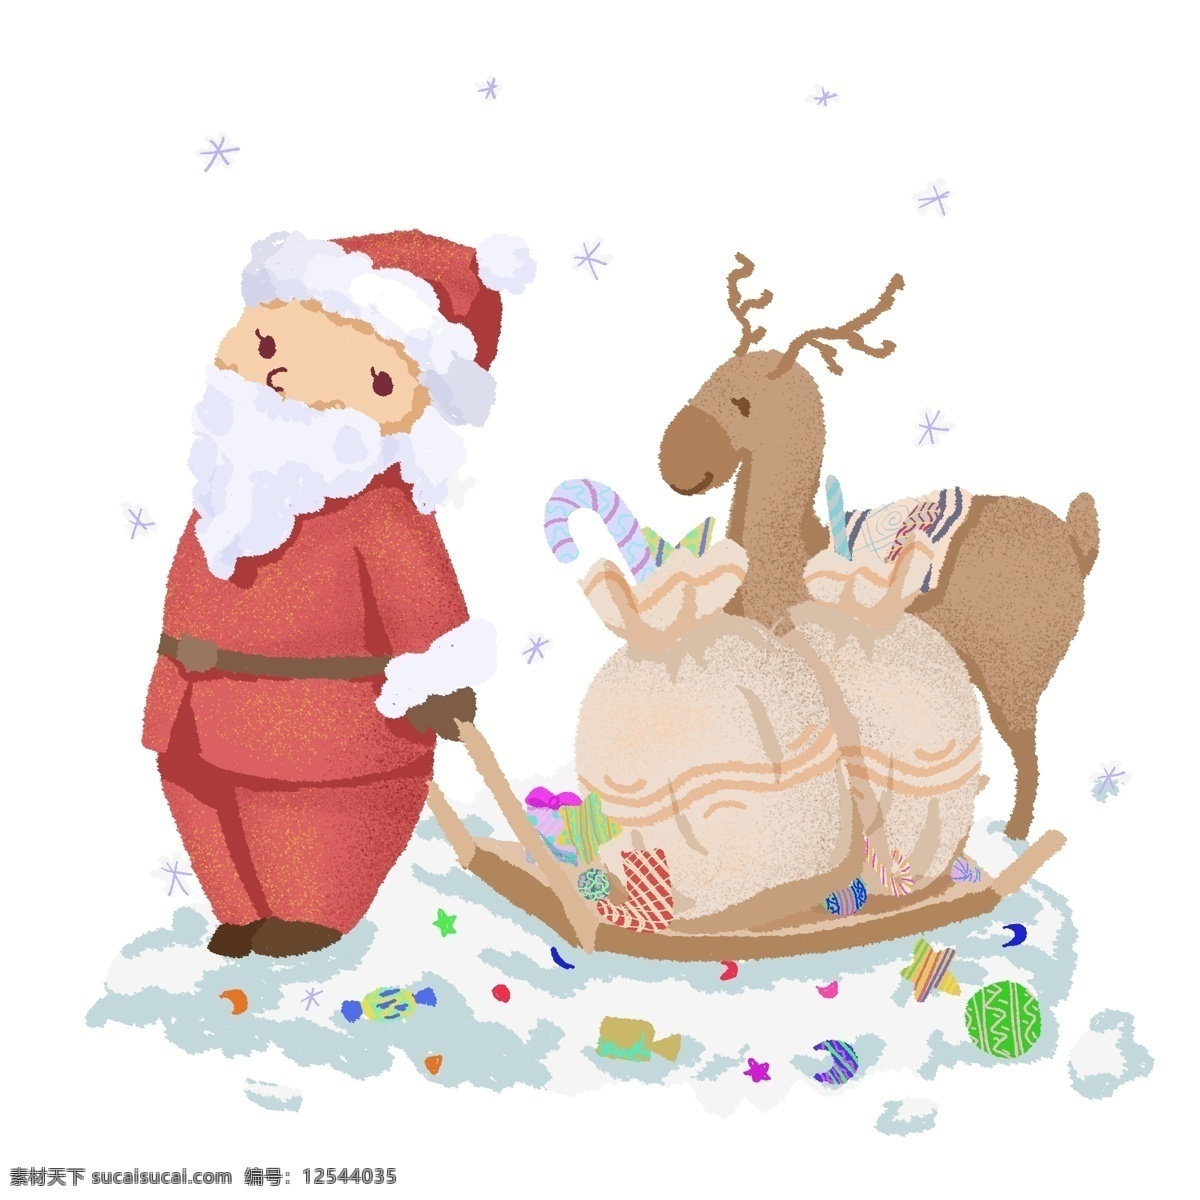 圣诞节 圣诞老人 驯鹿 送礼 物 礼物 节日 快乐 冬日 圣诞快乐 欢乐 童趣